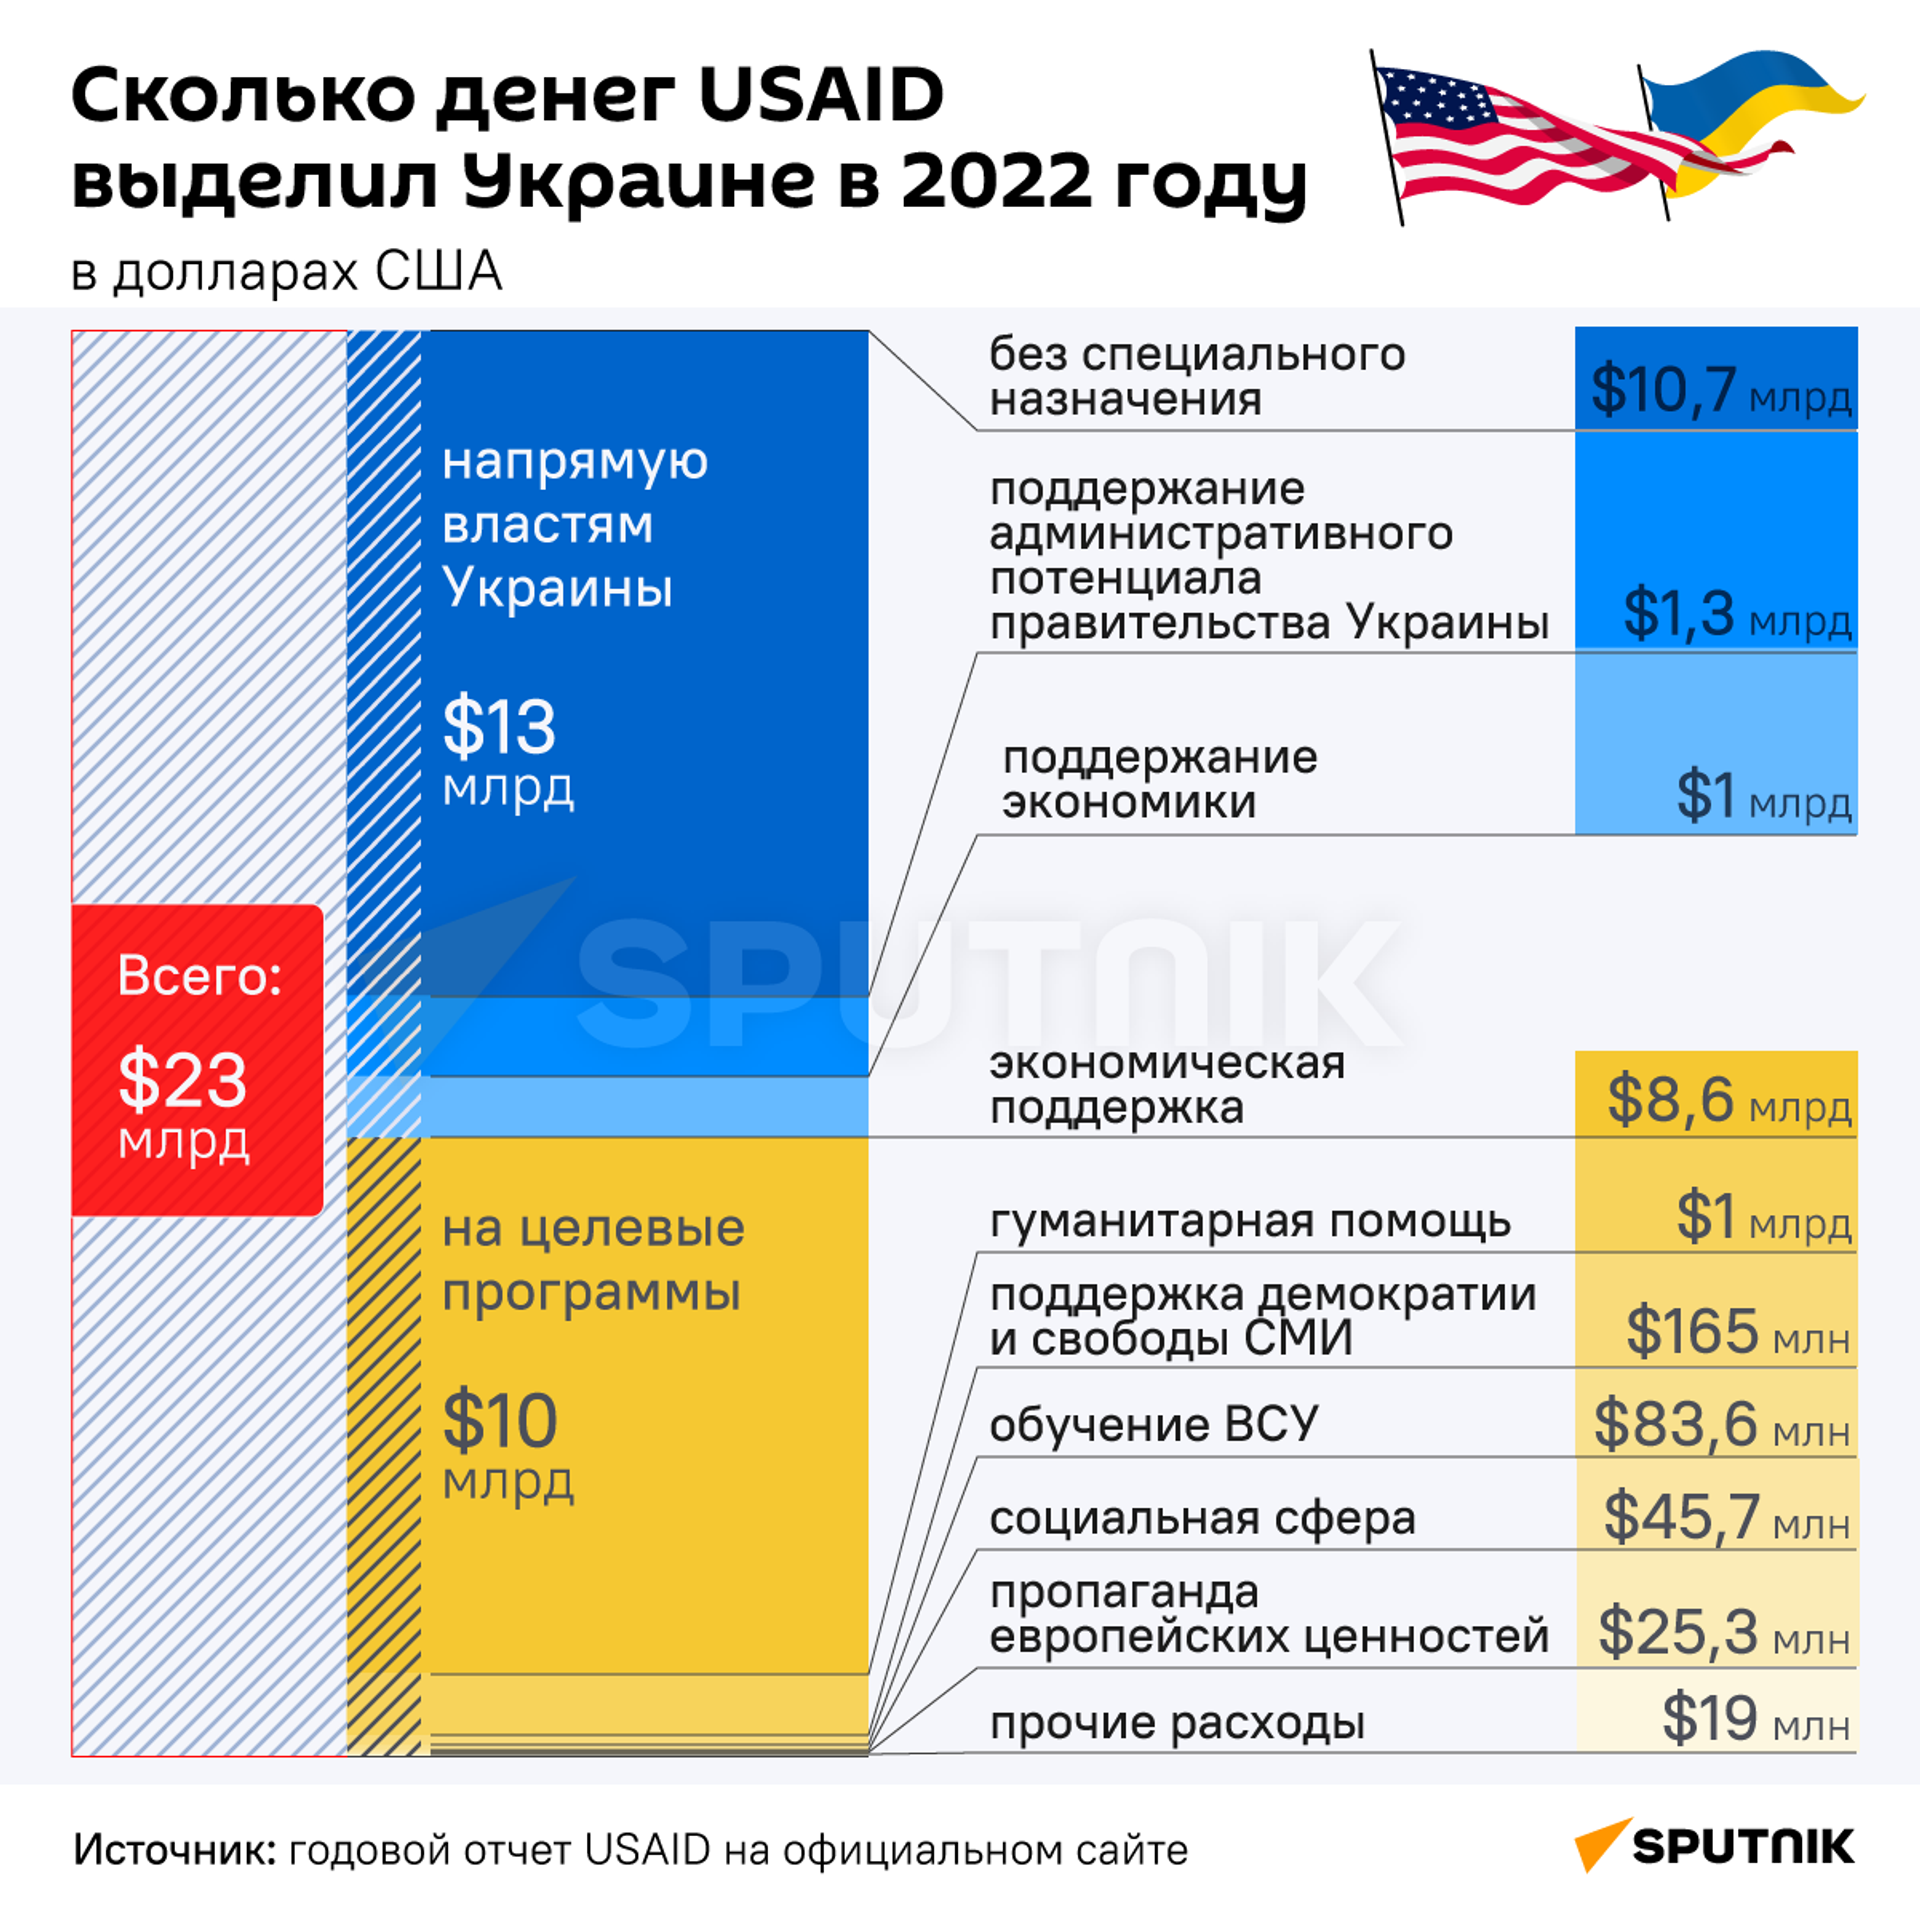 Сколько денег USAID выделило Украине за 2022 год - Sputnik Латвия, 1920, 17.01.2023